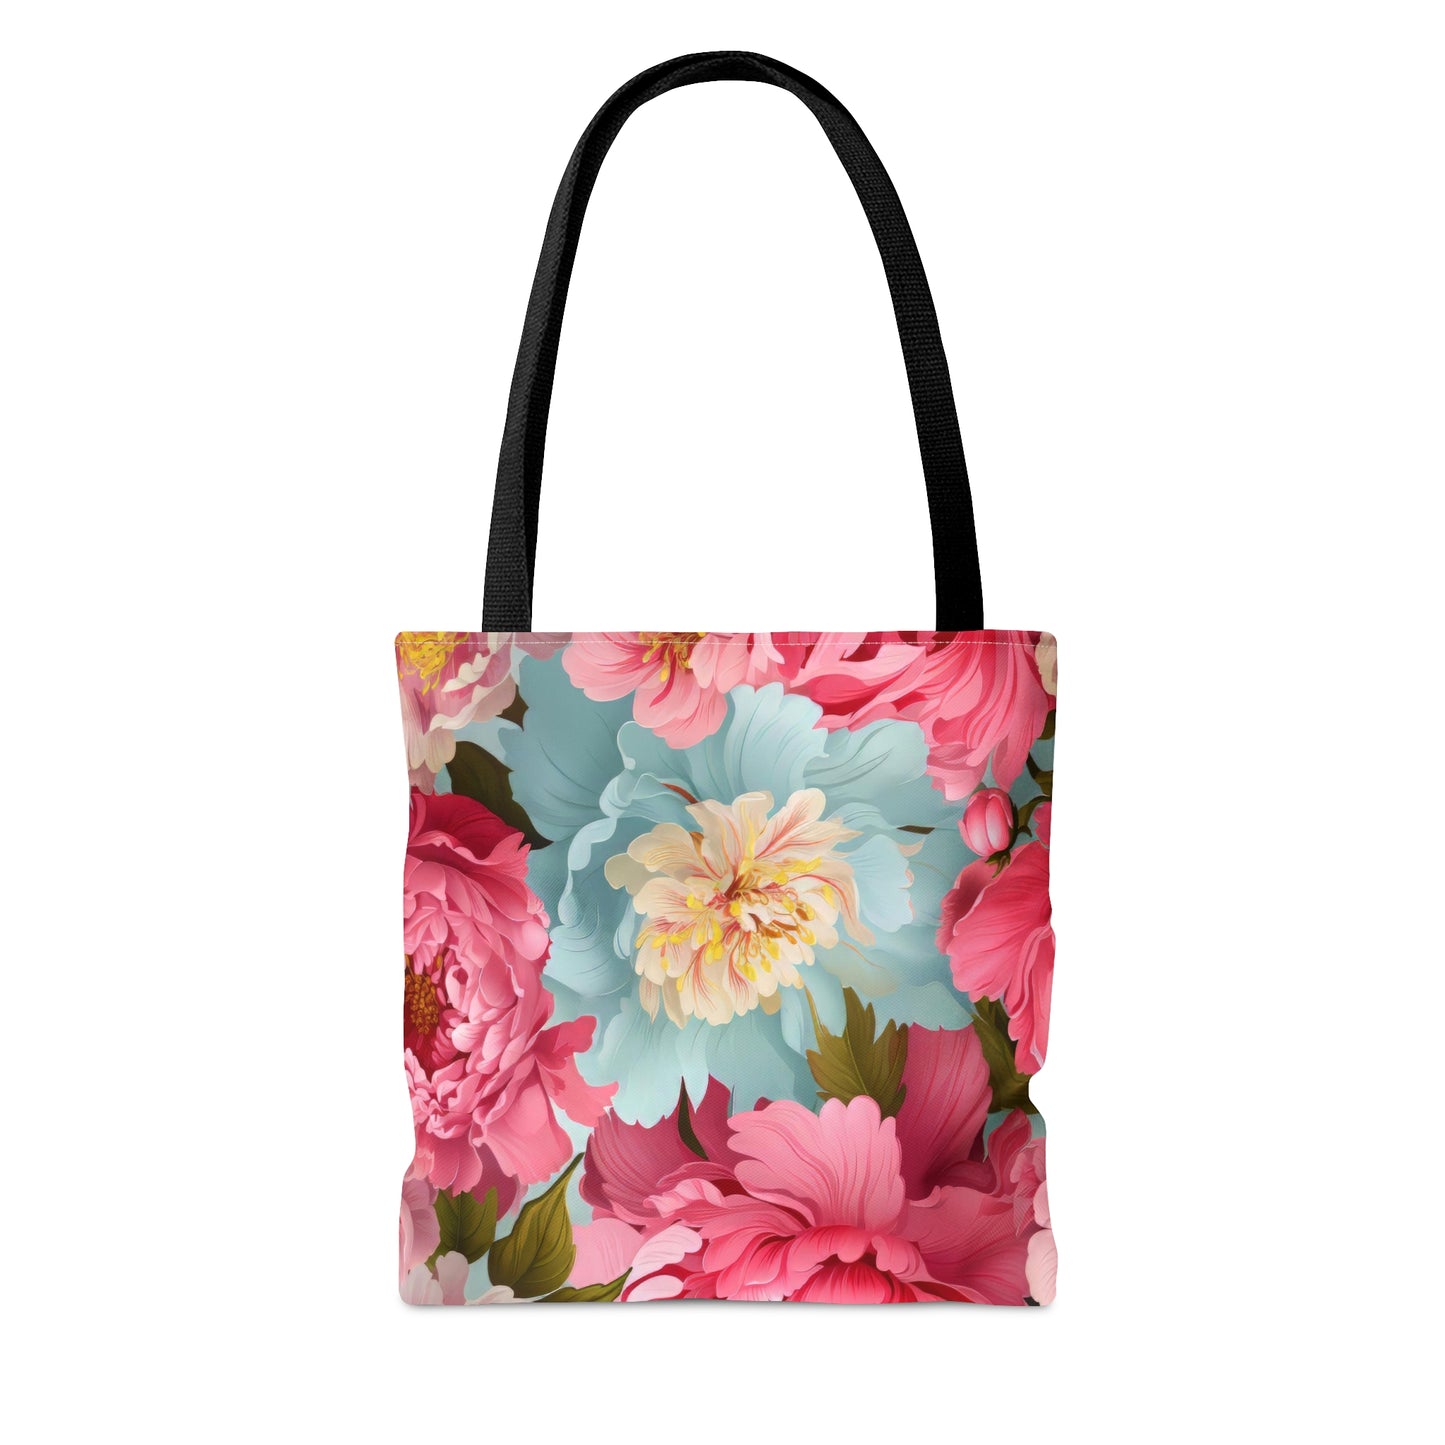 Playful Floral Tote Bag